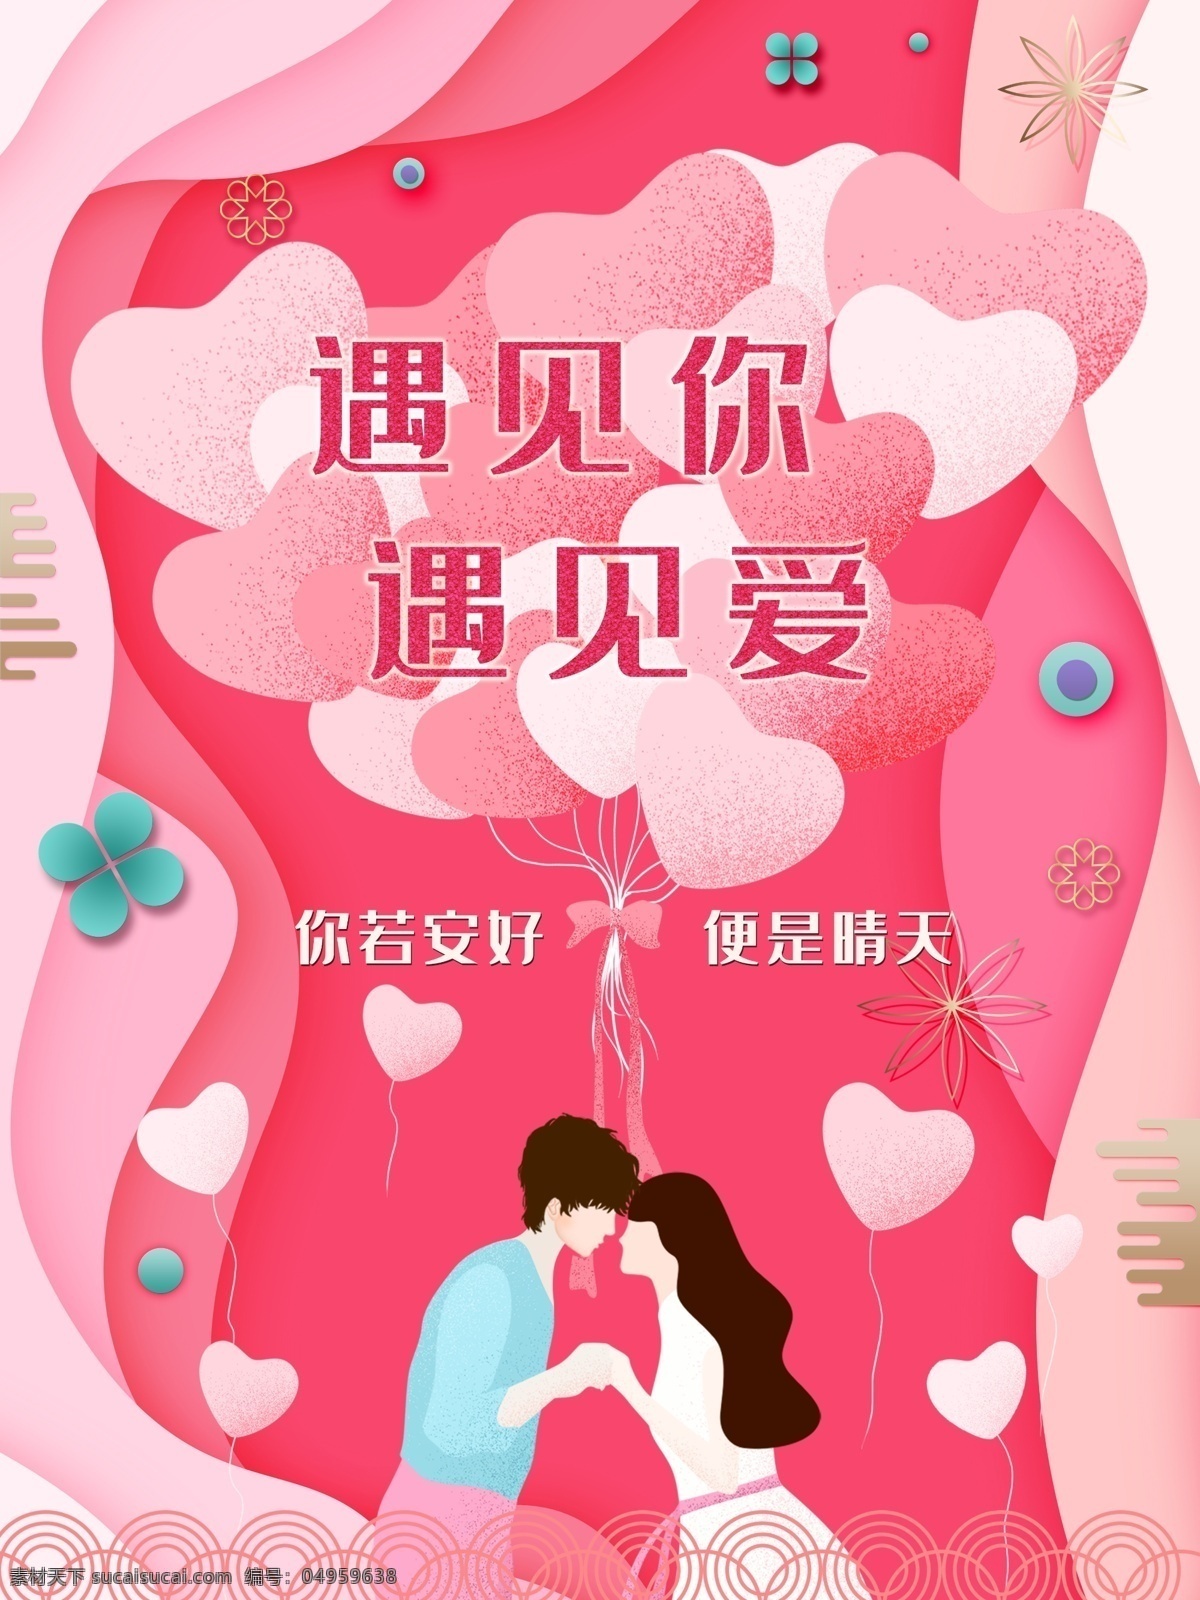 粉红 浪漫 爱情 情人节 海报 粉色 恋爱 520 表白 邂逅 遇见 婚庆 结婚 婚礼 卡通 可爱